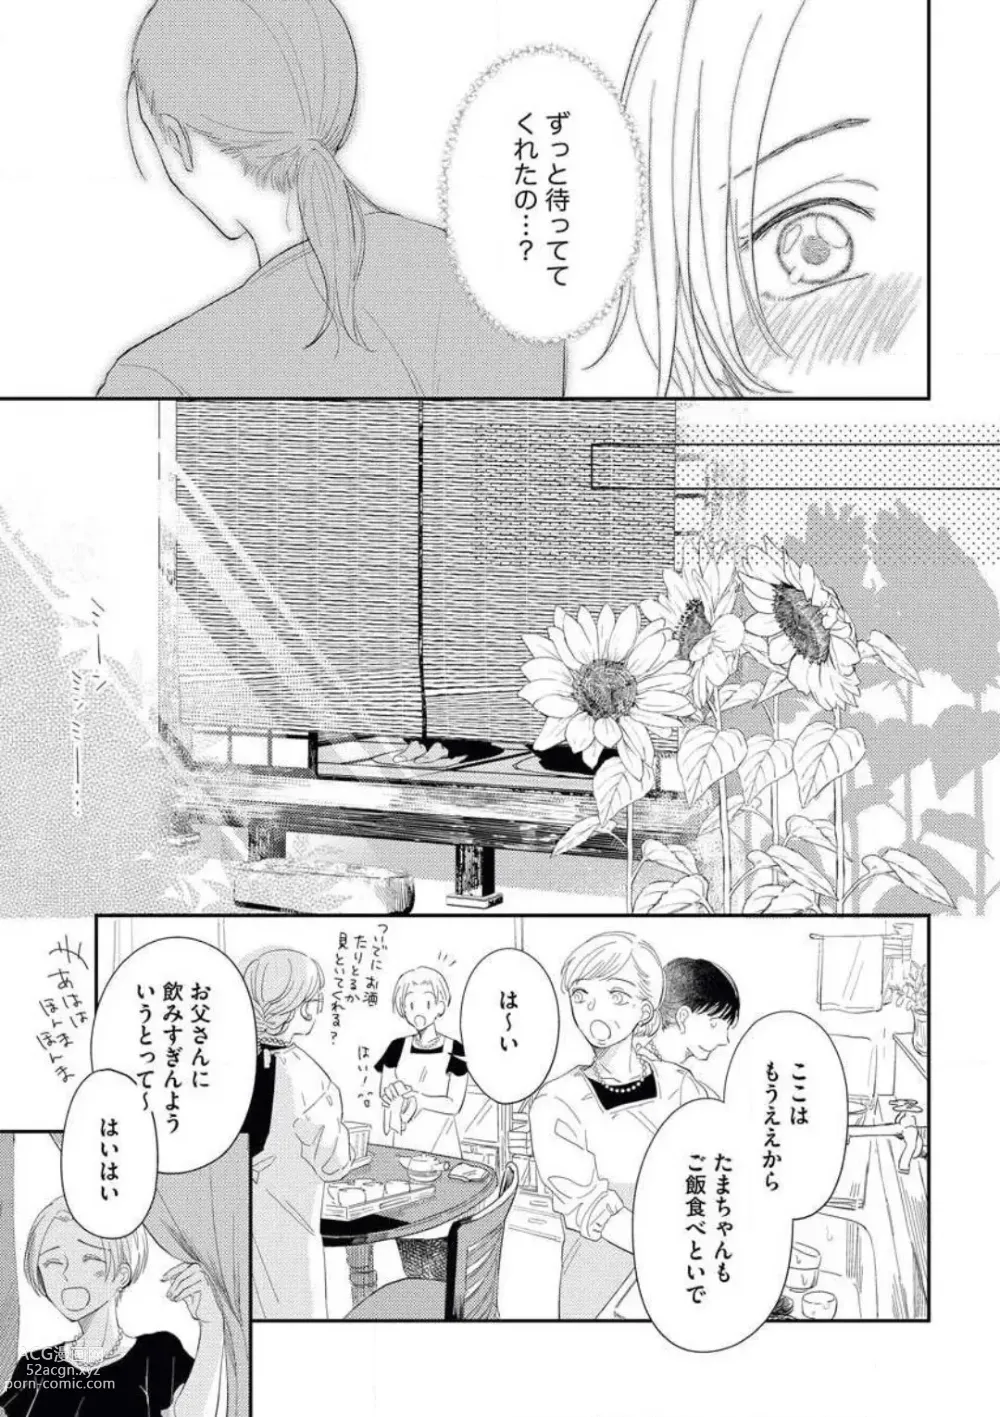 Page 13 of manga Zutto Matteru' Osananajimi to Gamandekinai Saikai Etchi